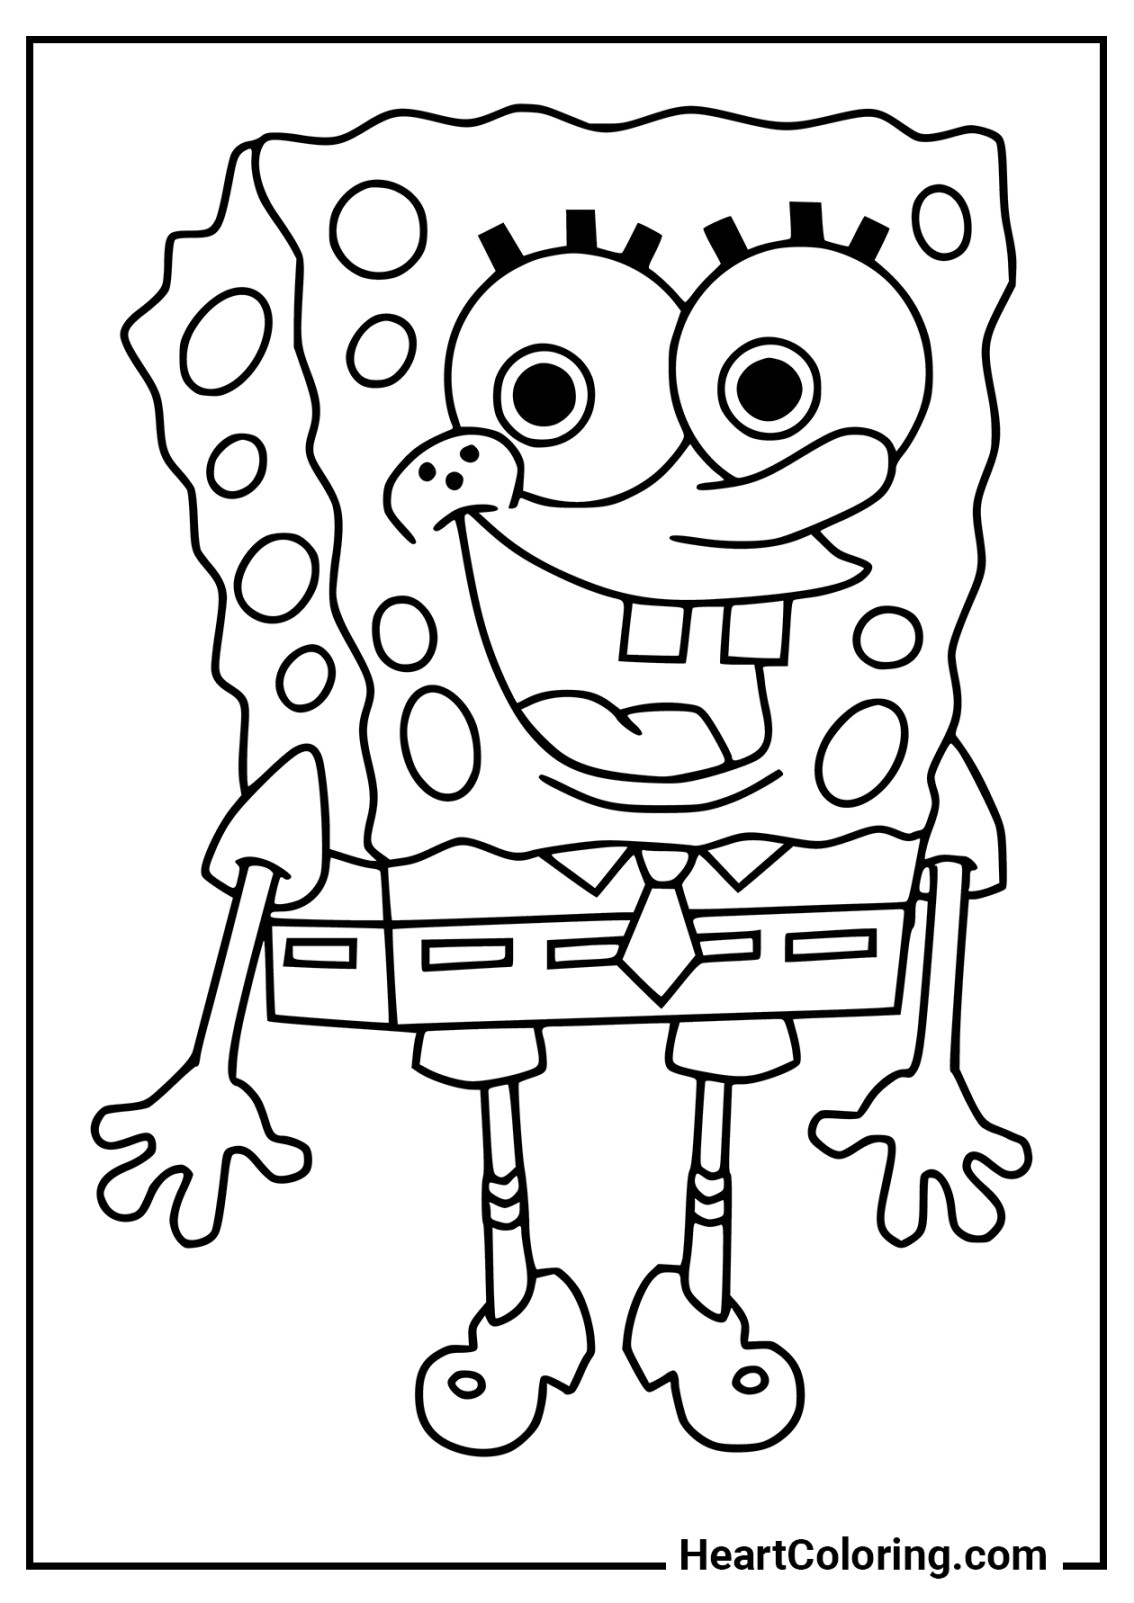 Ausmalbilder von SpongeBob Schwammkopf zum Ausdrucken